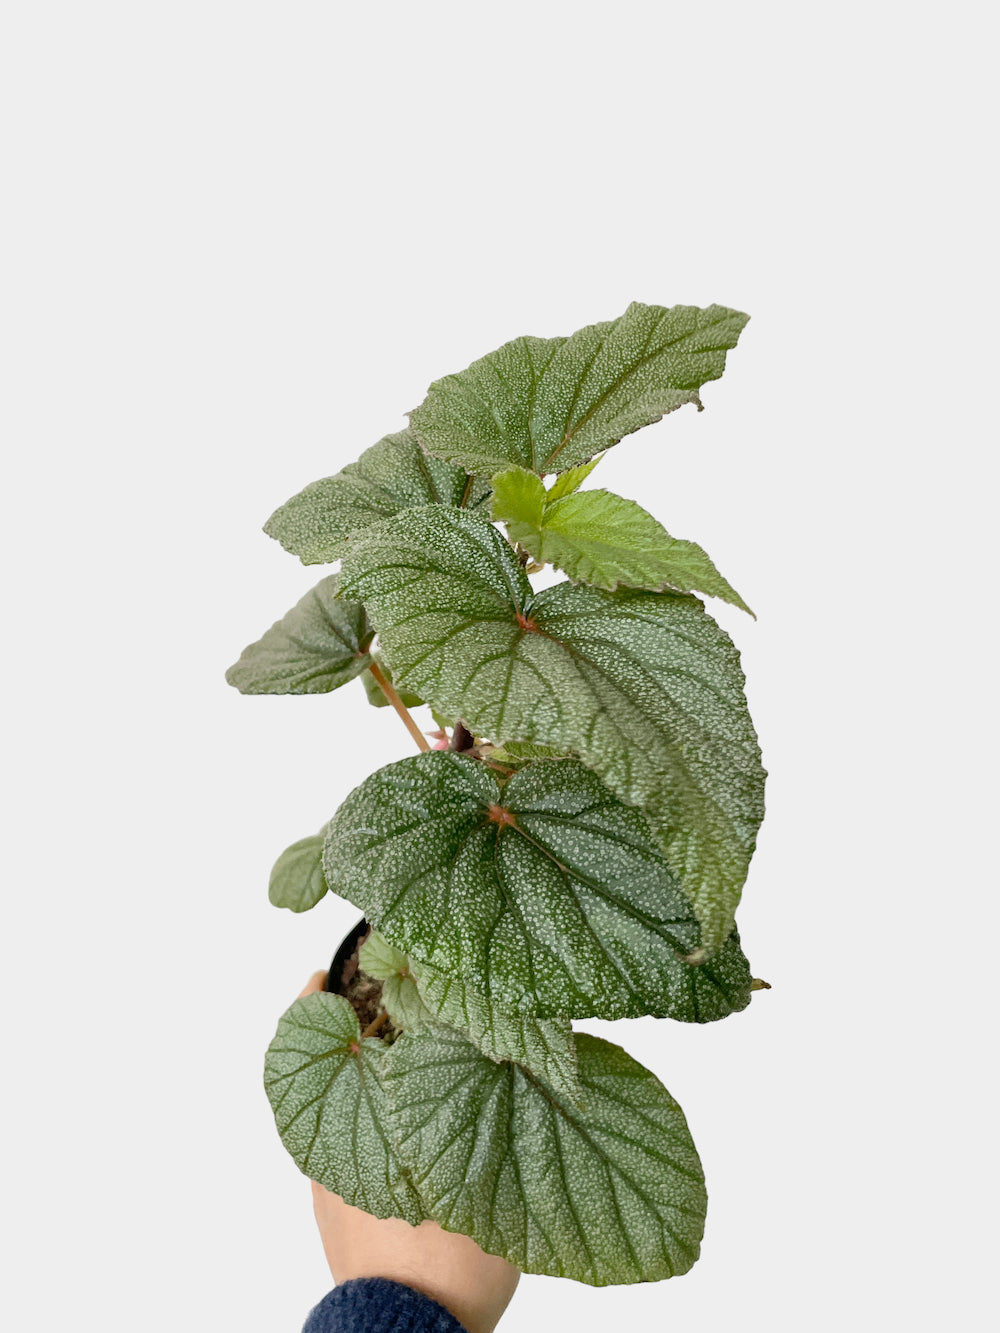 Begonia Sinbad - 4" Pot